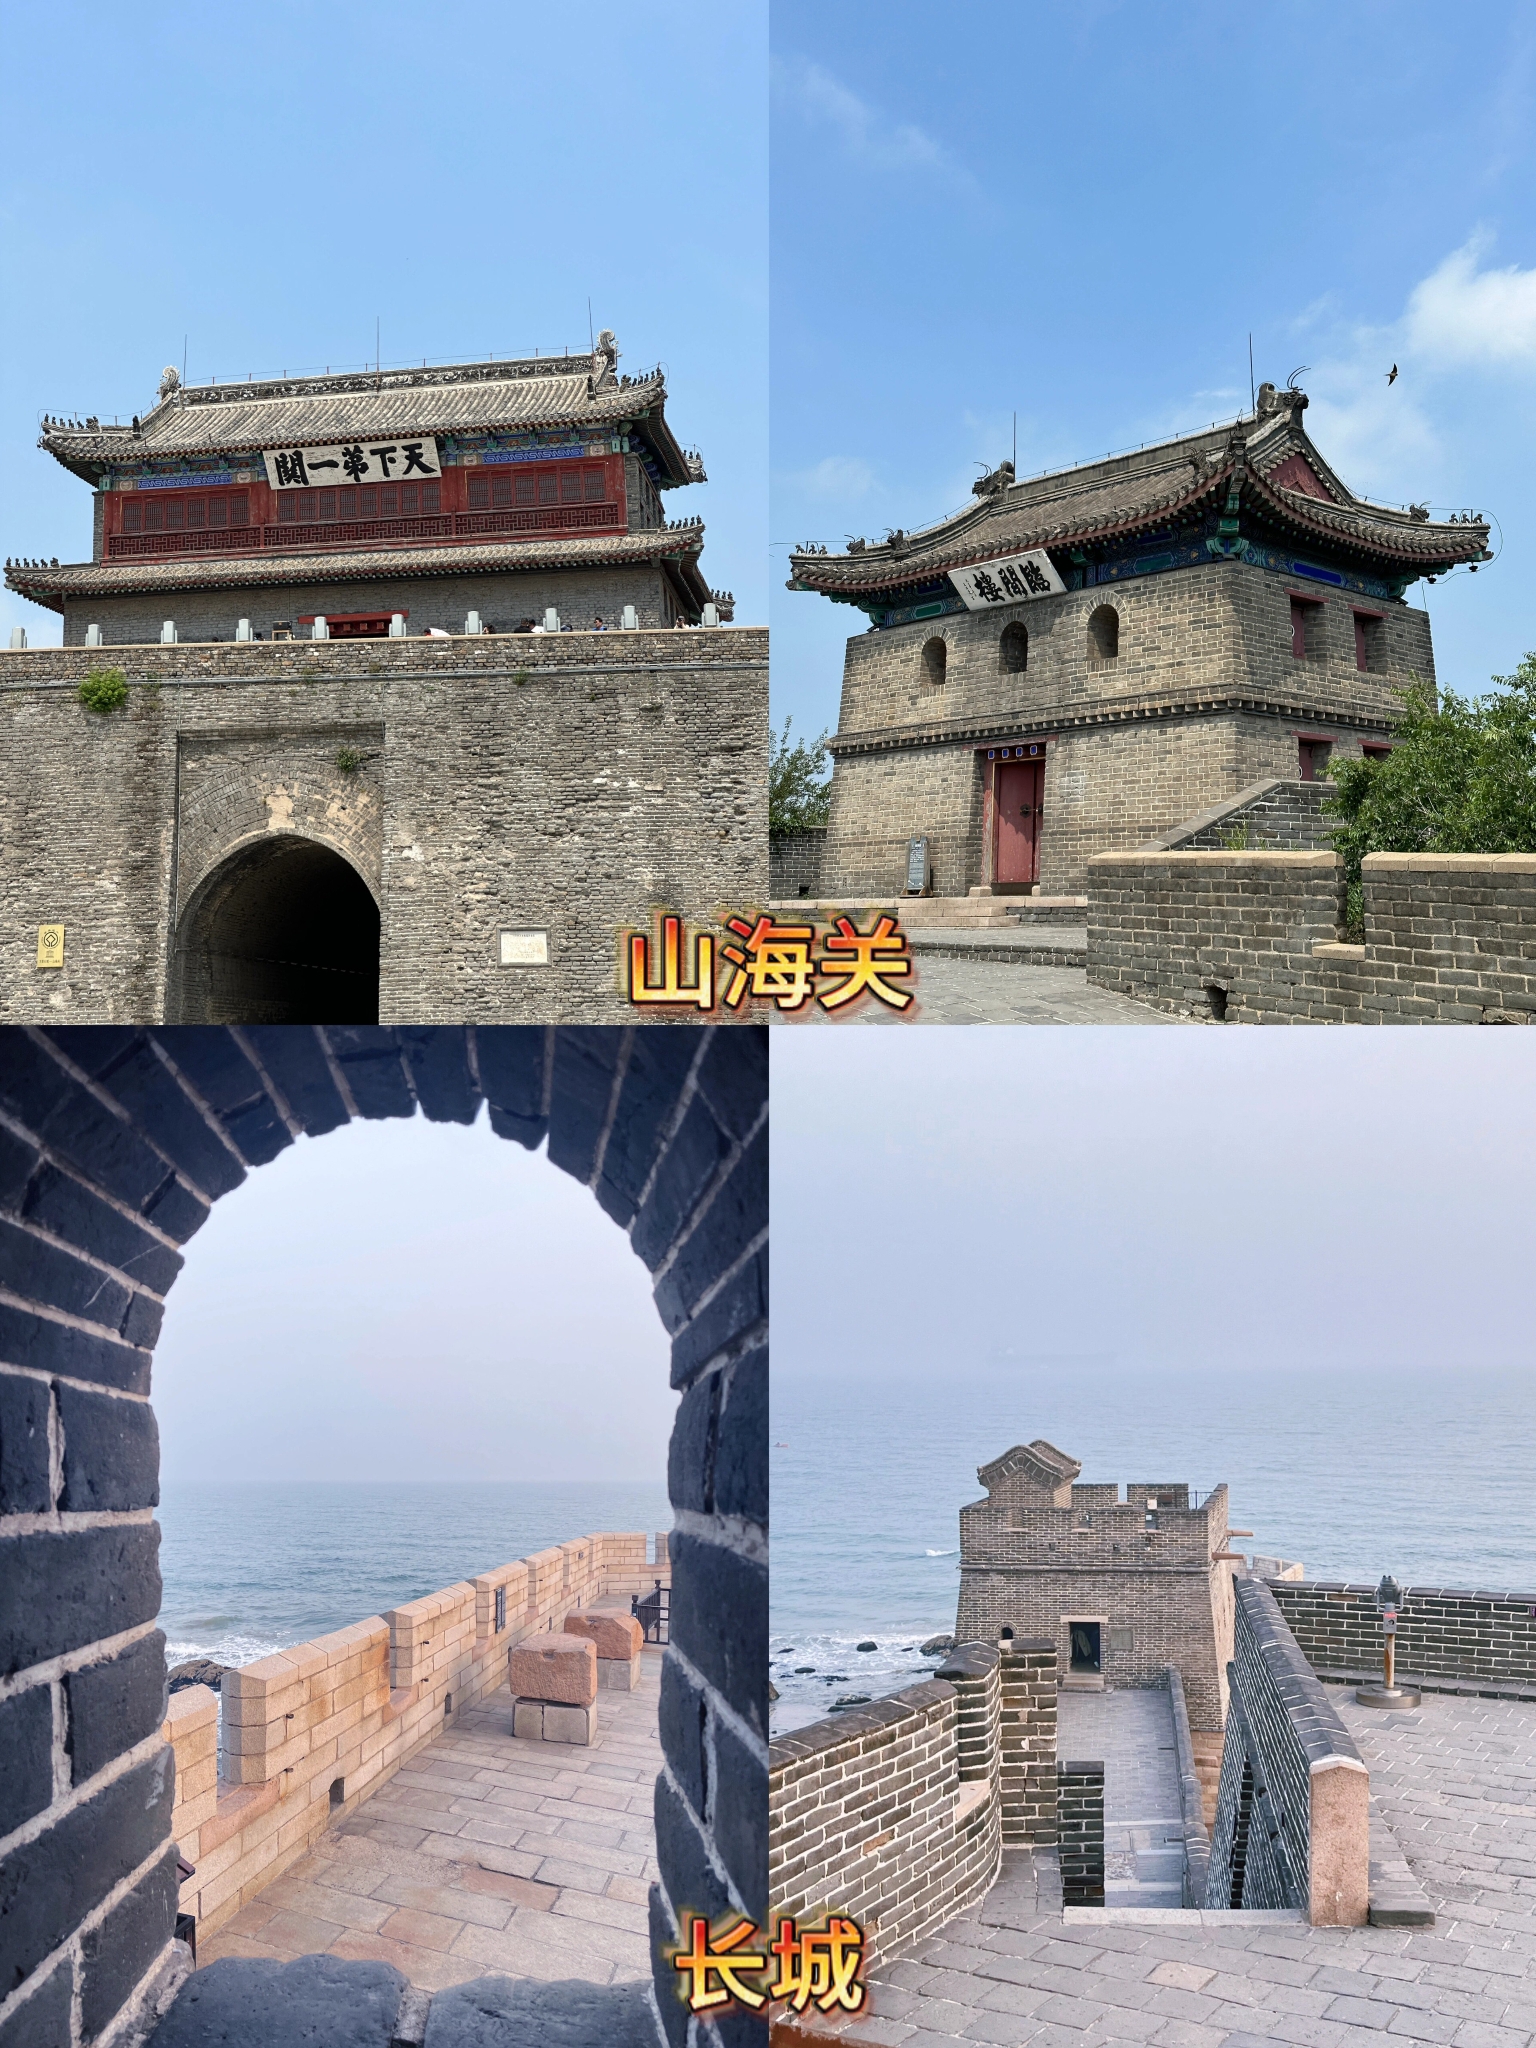 山海关是中国河北省秦皇岛市的一个著名地区，也是明长城的一个重要关口。长城是中国古代的军事防御工程，是